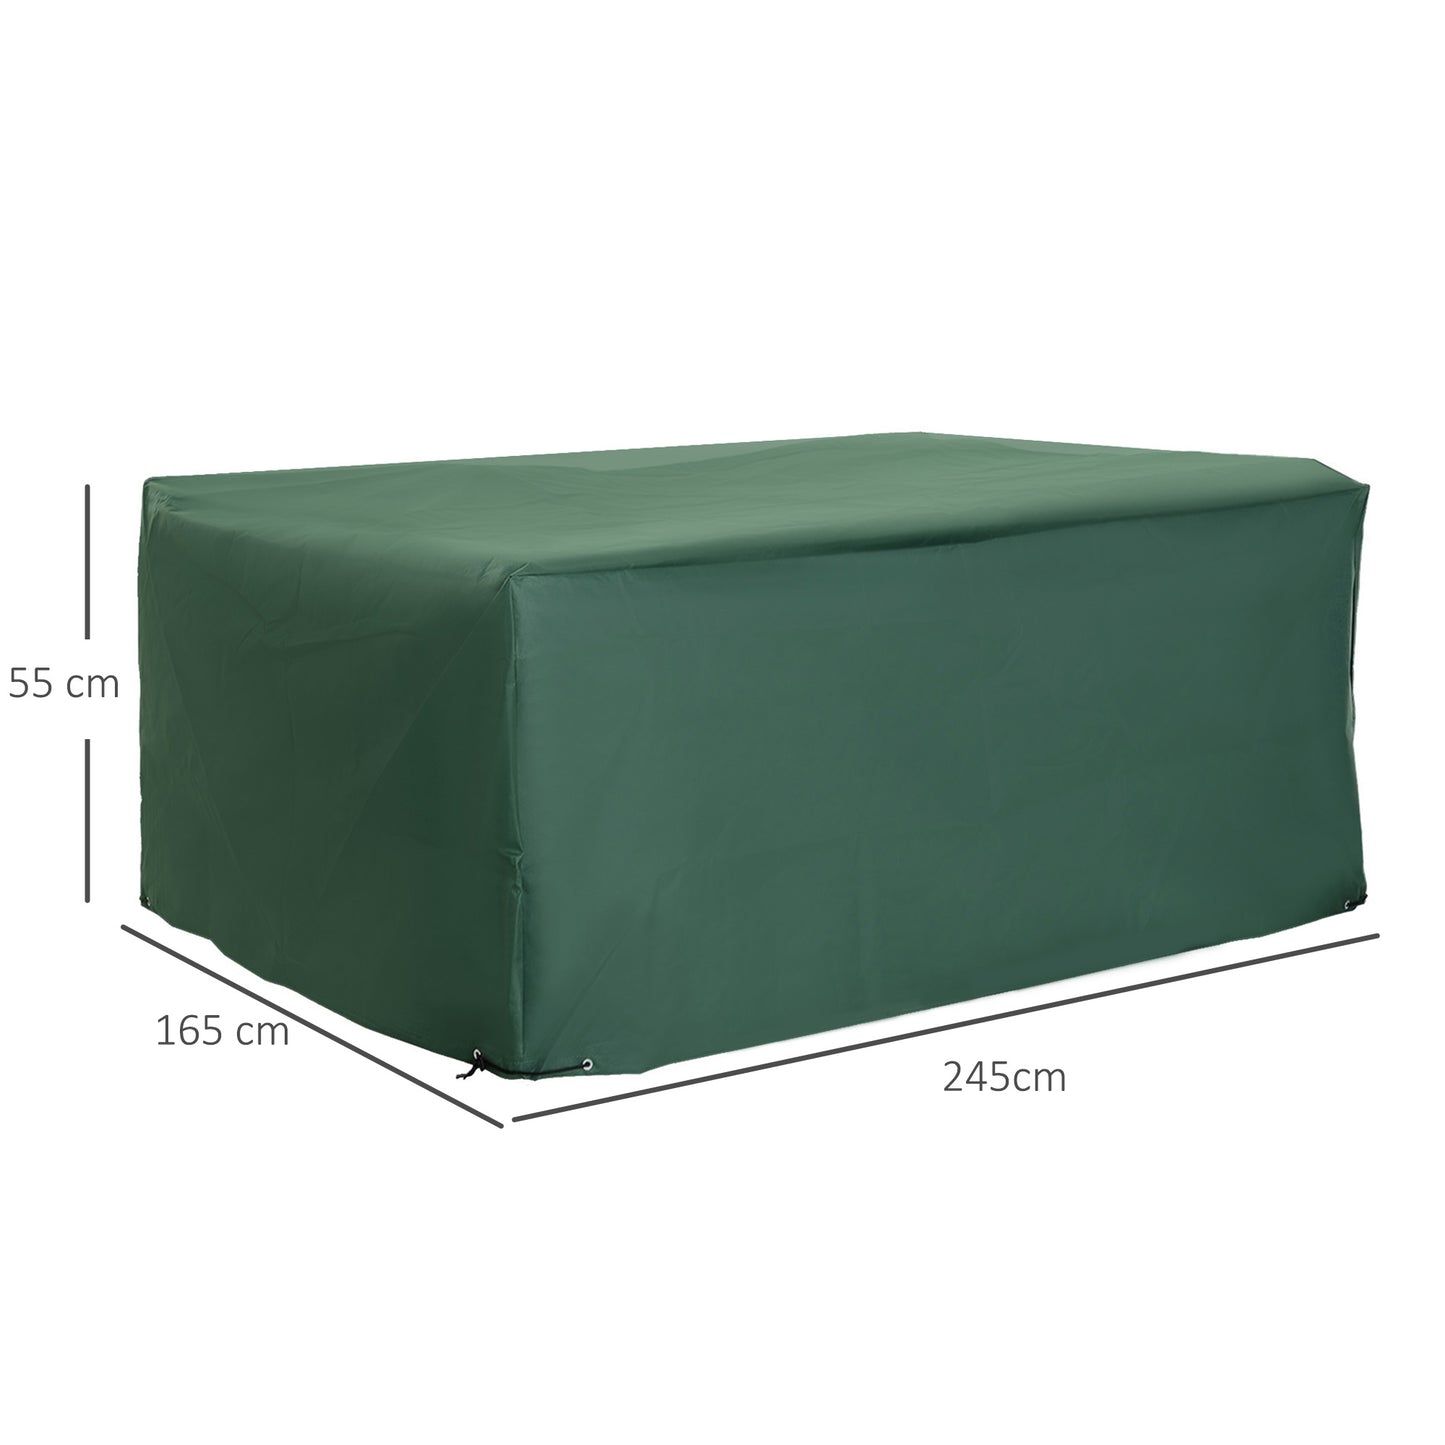 Outsunny Funda para Muebles de Jardín 245x165x55 cm Cubierta de Protección de Exterior con Ojales de Aluminio y Tela Oxford Impermeable para Terraza Patio Balcón Verde